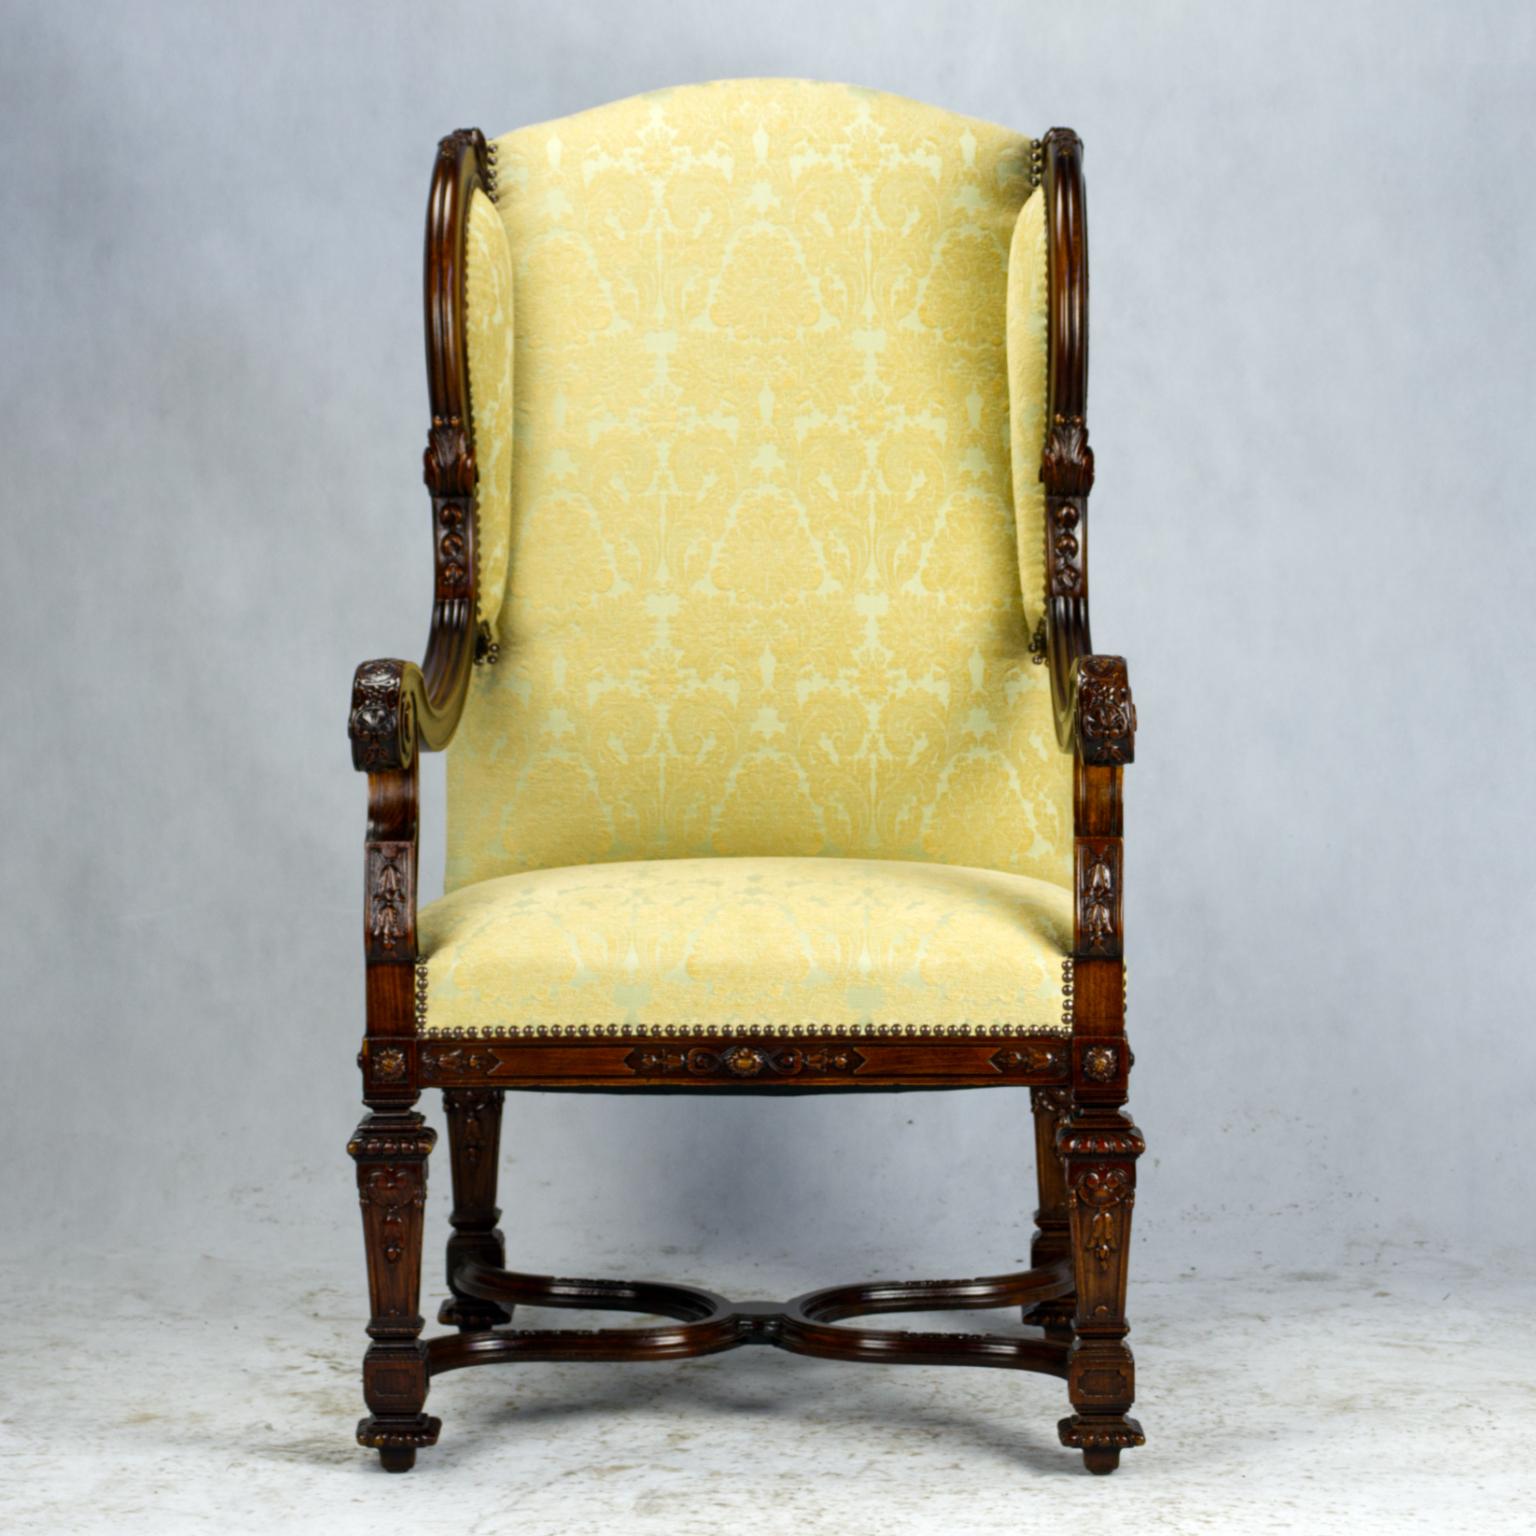 Ce fauteuil à oreilles en noyer de style Louis XIV est d'une élégance majestueuse et d'un confort extraordinaire. Les dossiers latéraux aux contours gracieux et les armatures à double enroulement bercent l'utilisateur dans le luxe, avec une assise